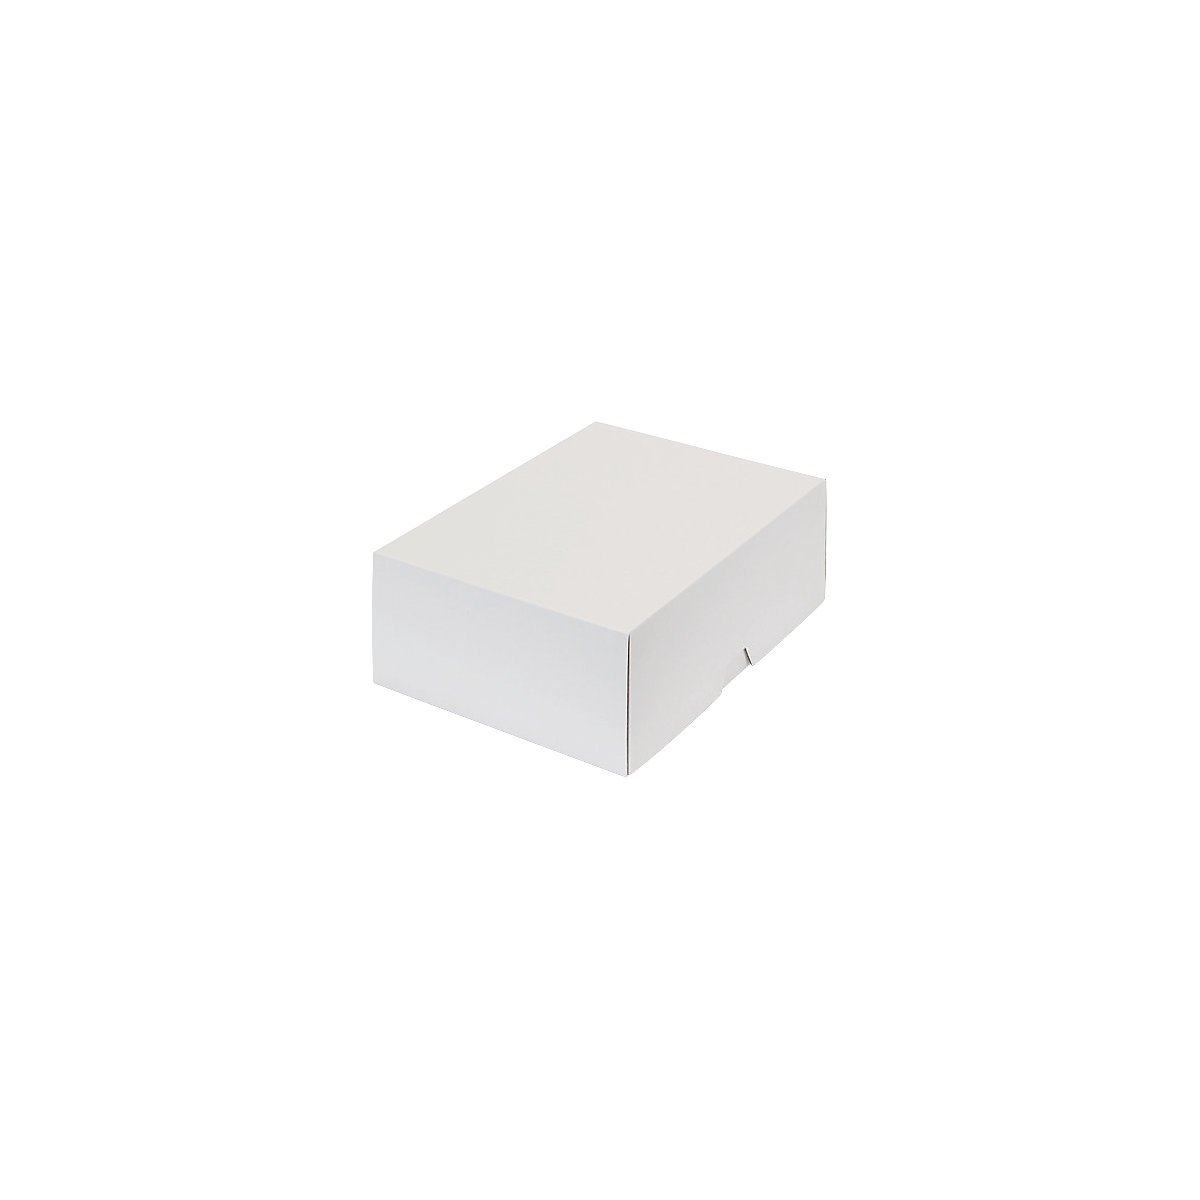 Stülpdeckelkarton, braun, Innenmaße 305 x 214 x 107 mm, A4, weiß, ab 100 Stk